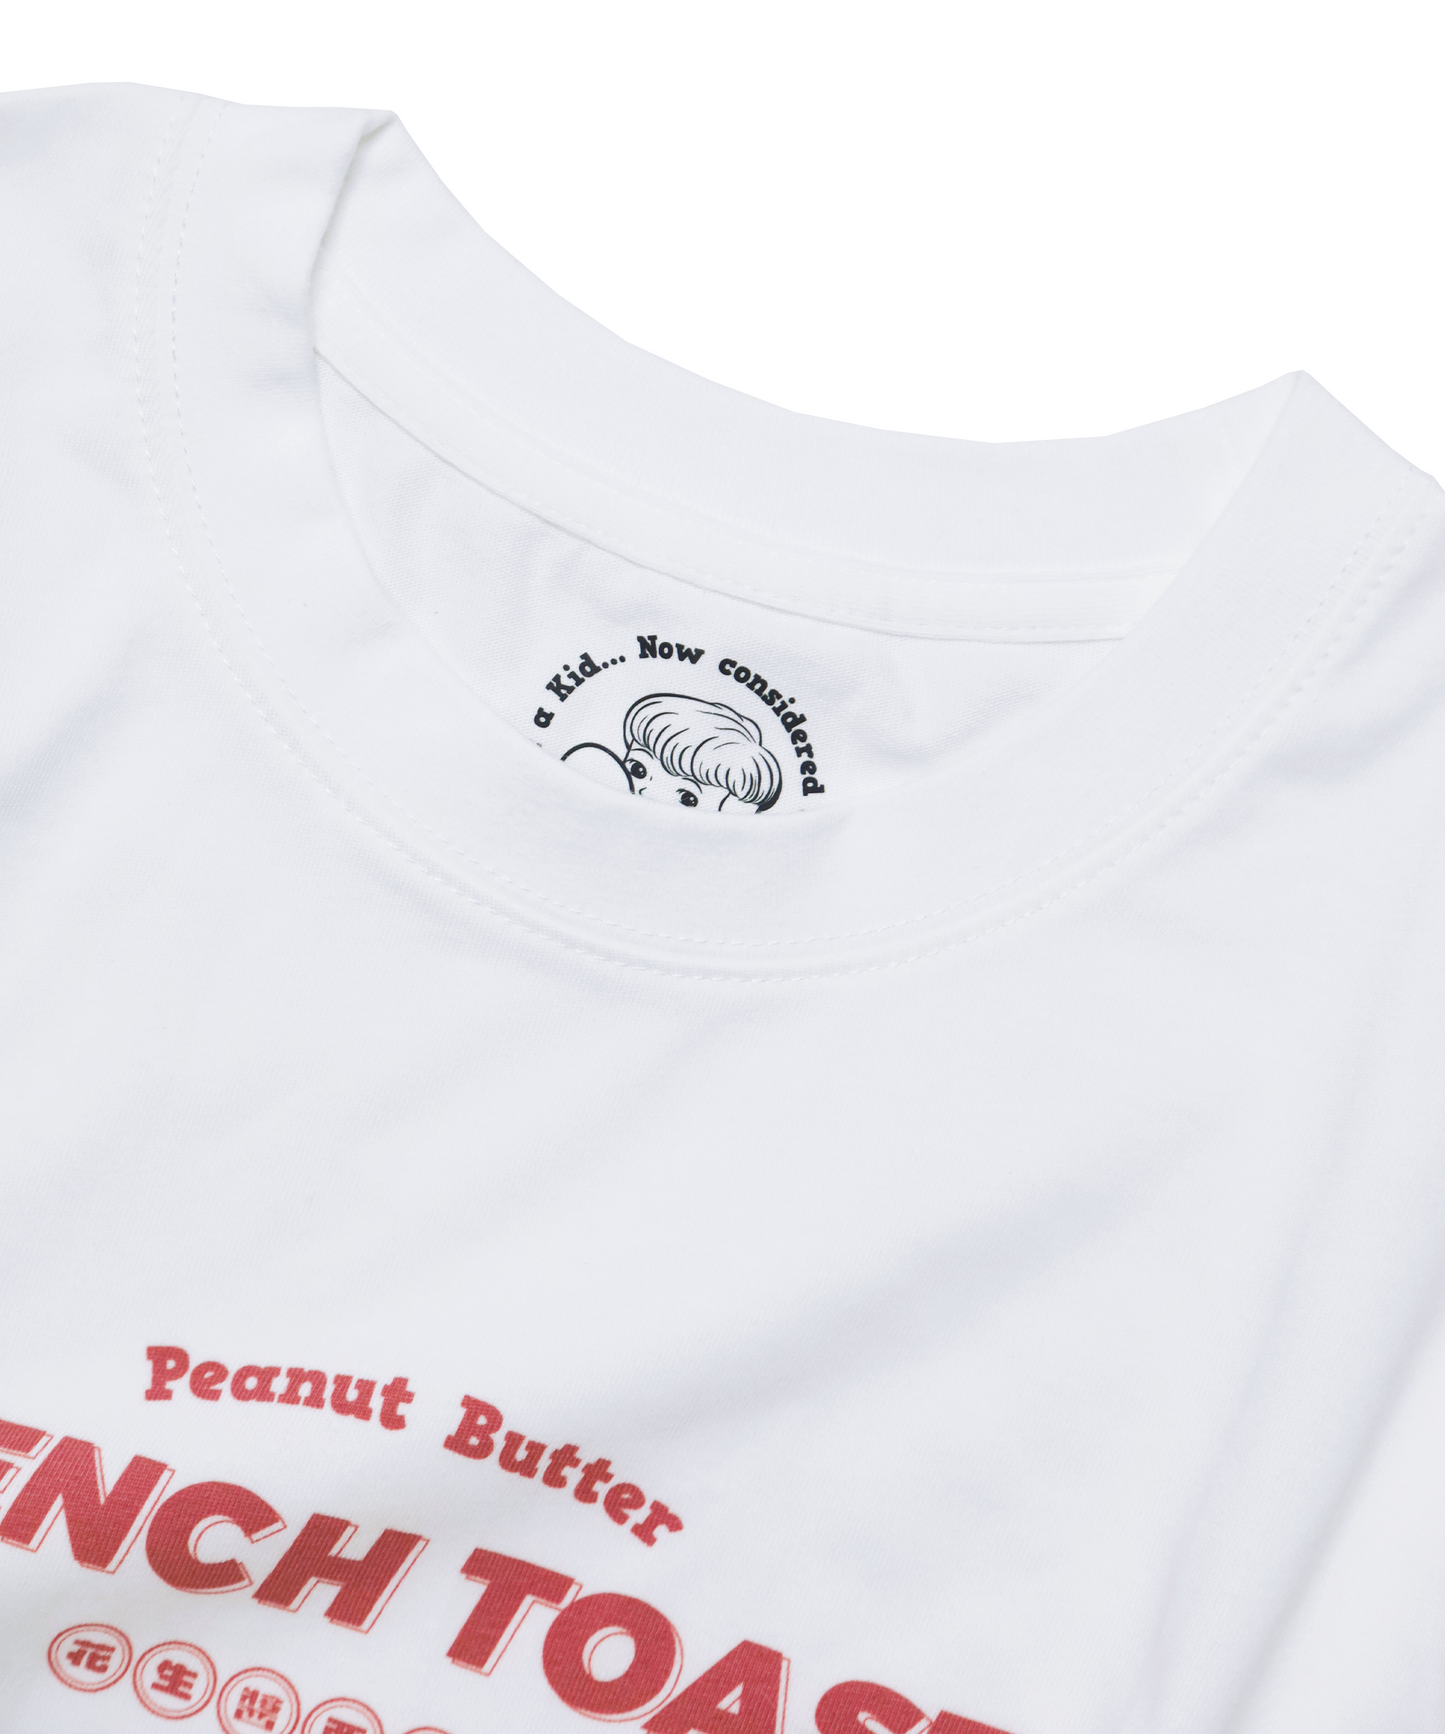 花生醬牛油 多士 美式懷舊 短袖T shirt衫系列